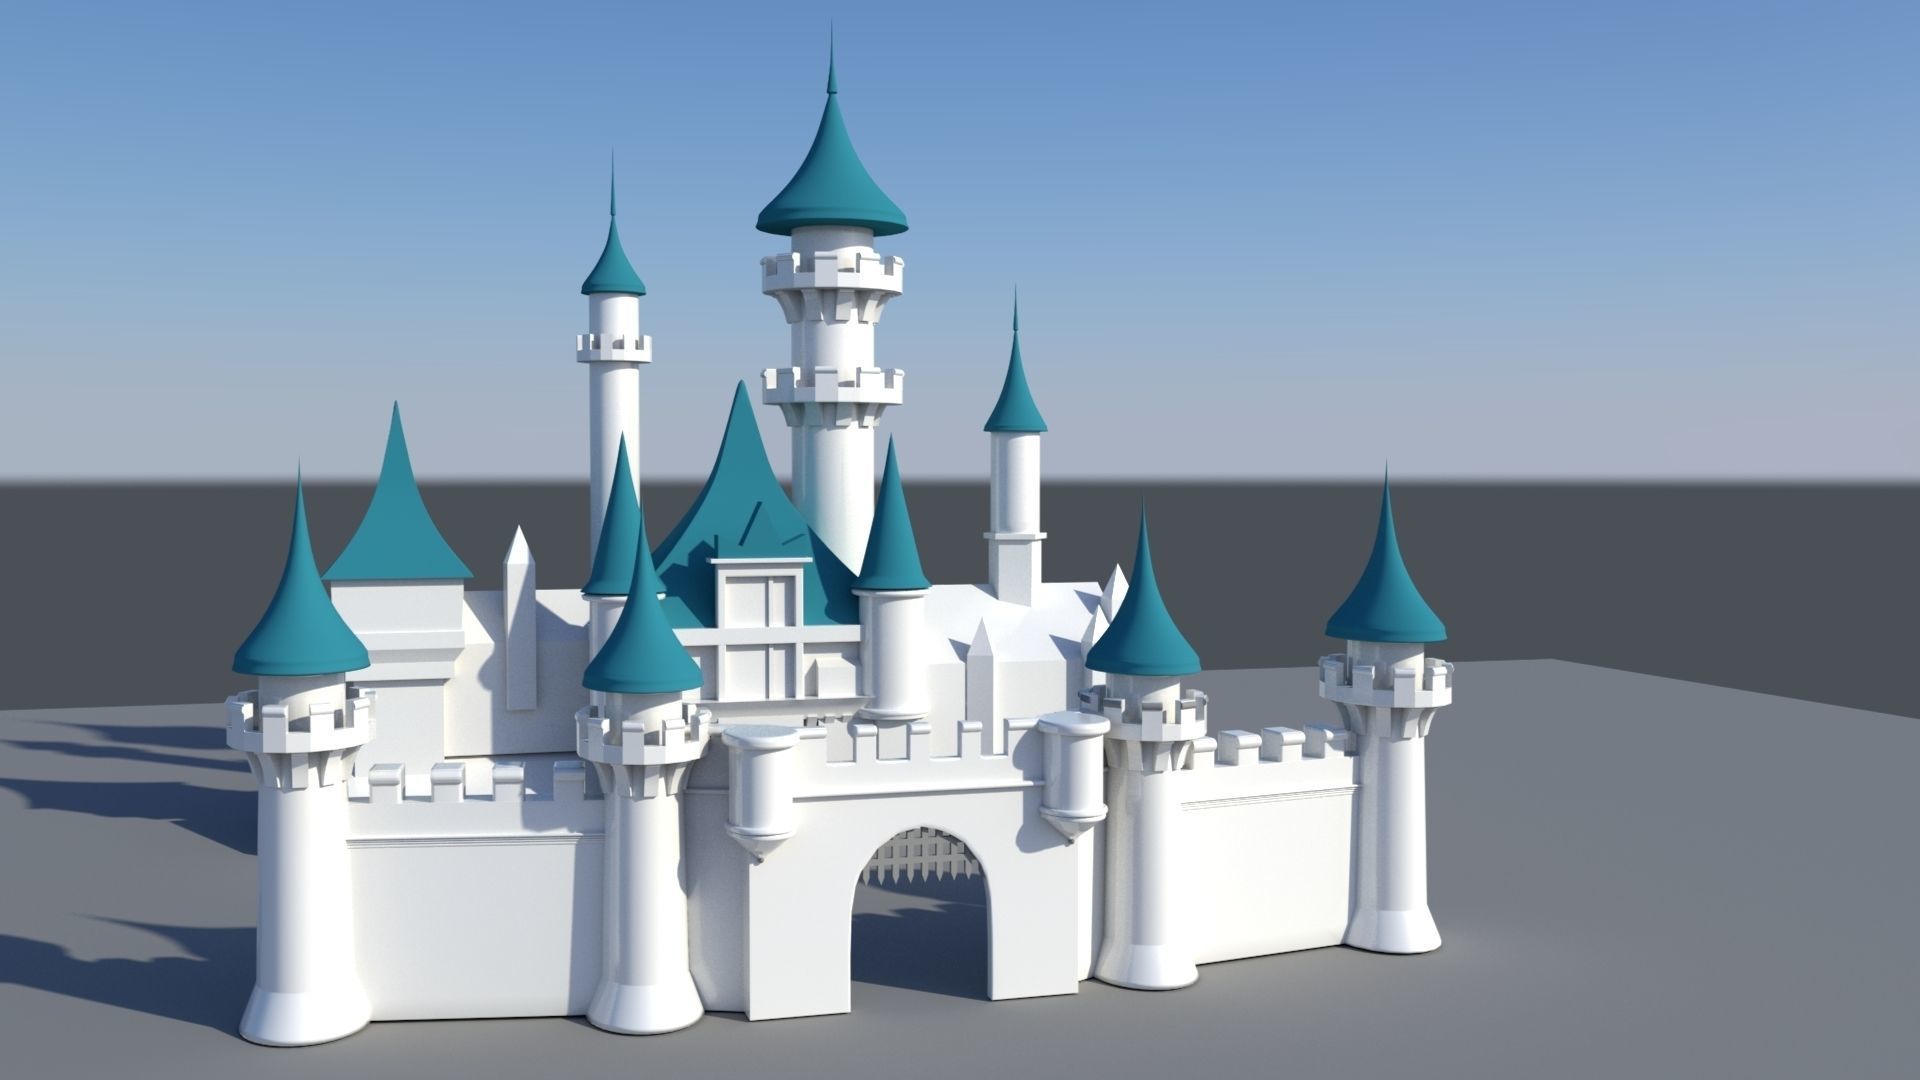 Disney Castle 3D model Download for Free